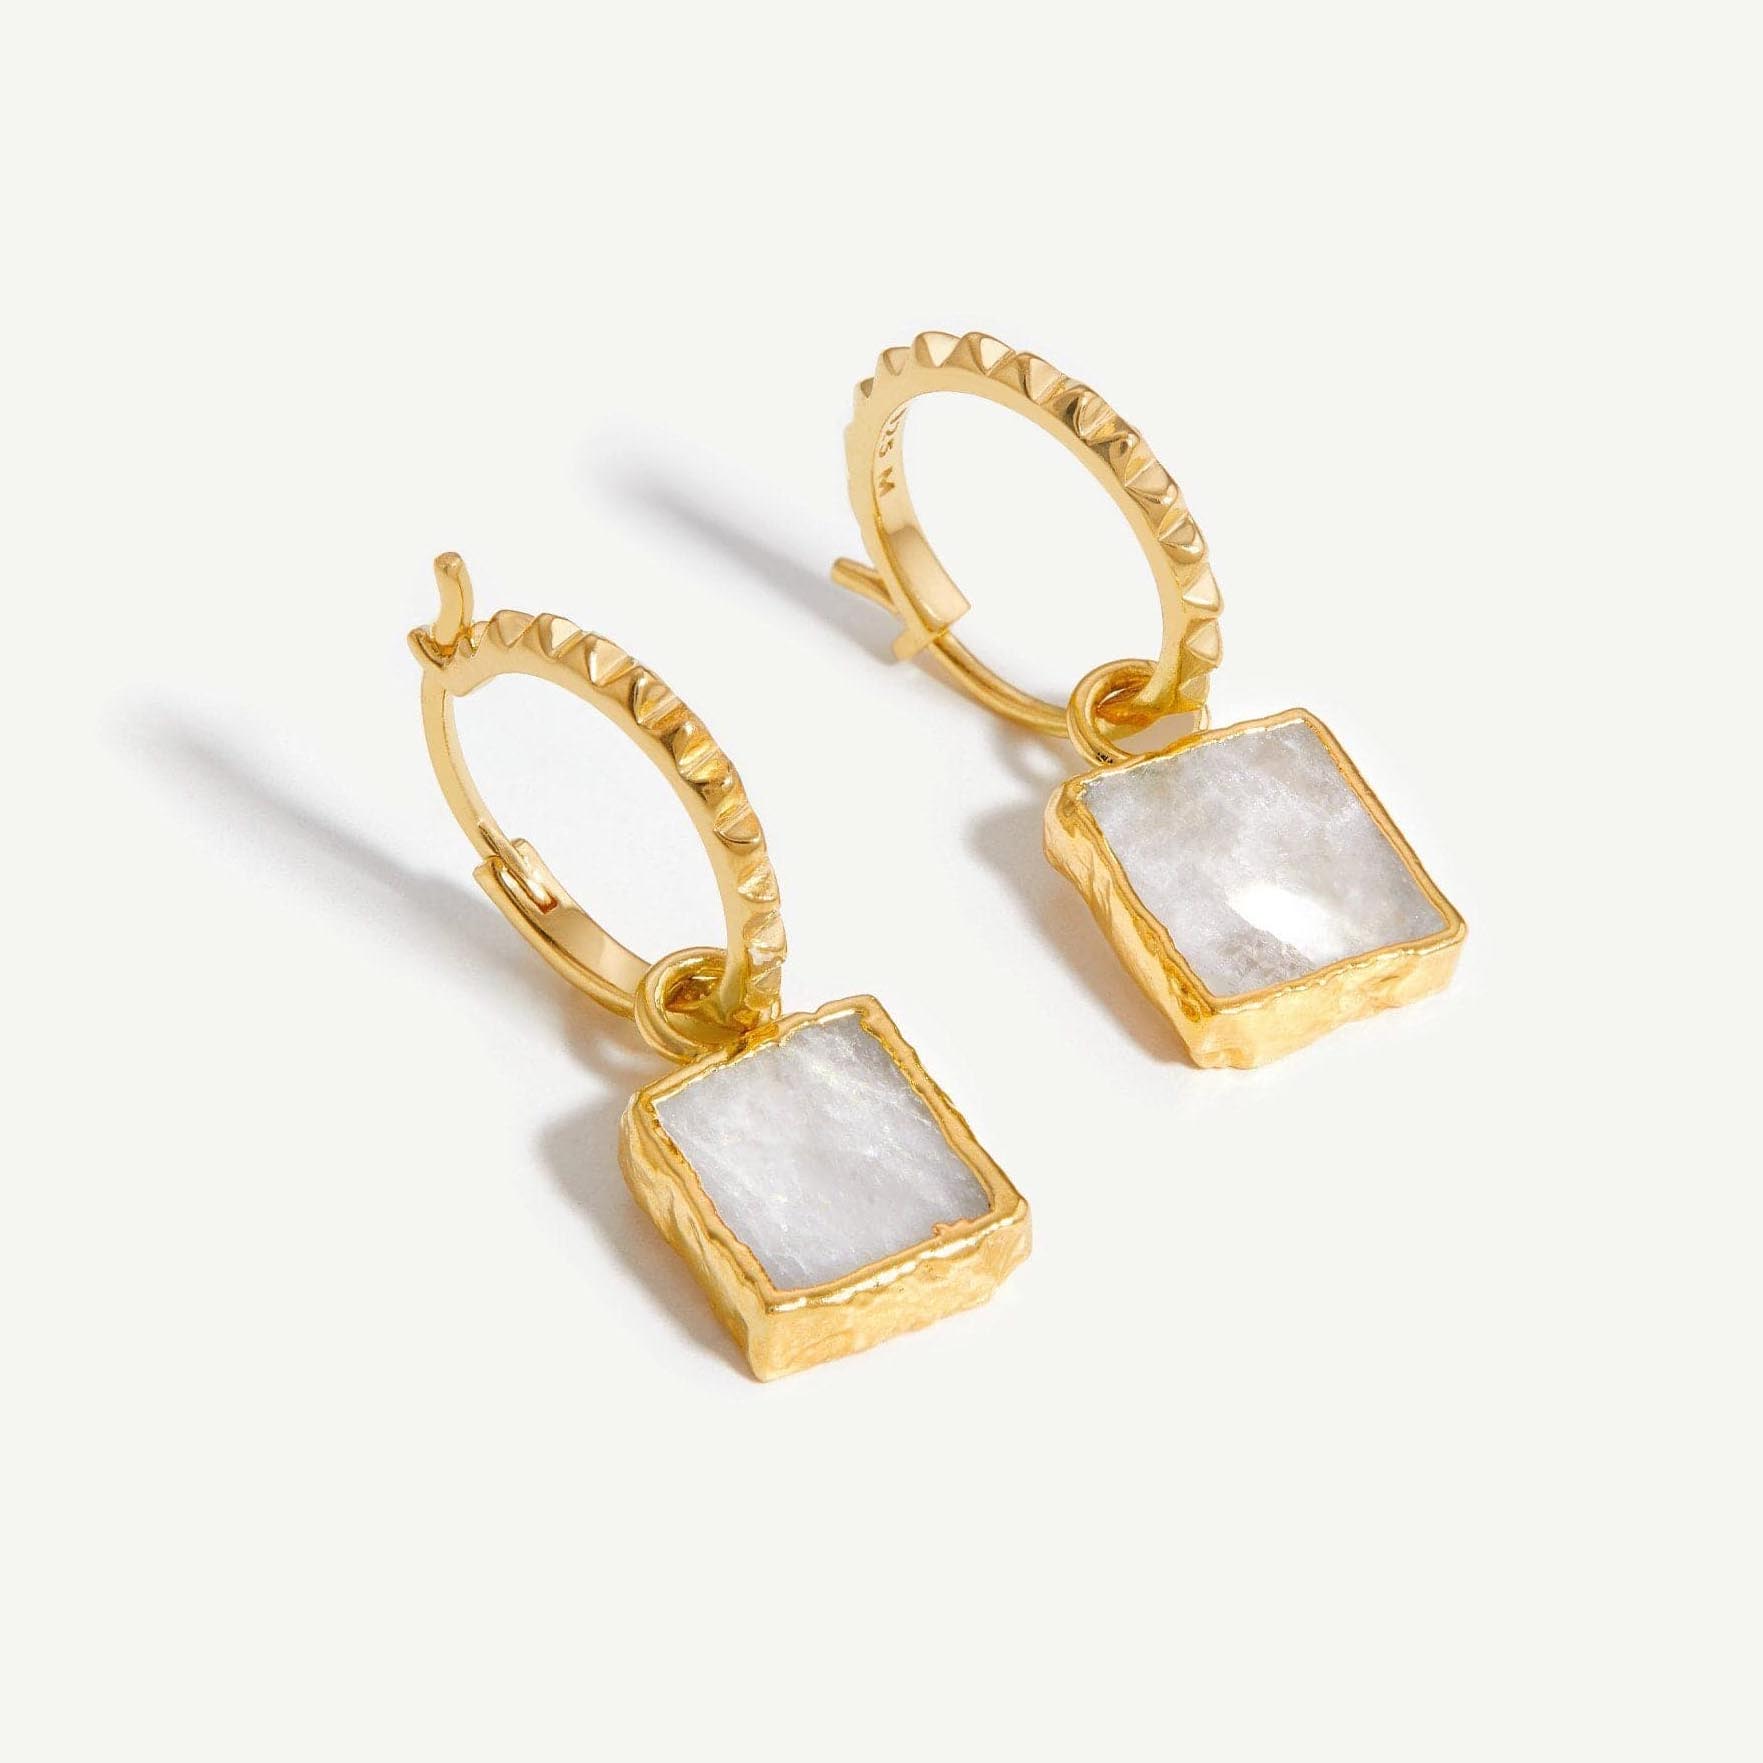 Custom women jewelry manufacturer OEM ODM 925 silver earrings in  18k gold plated